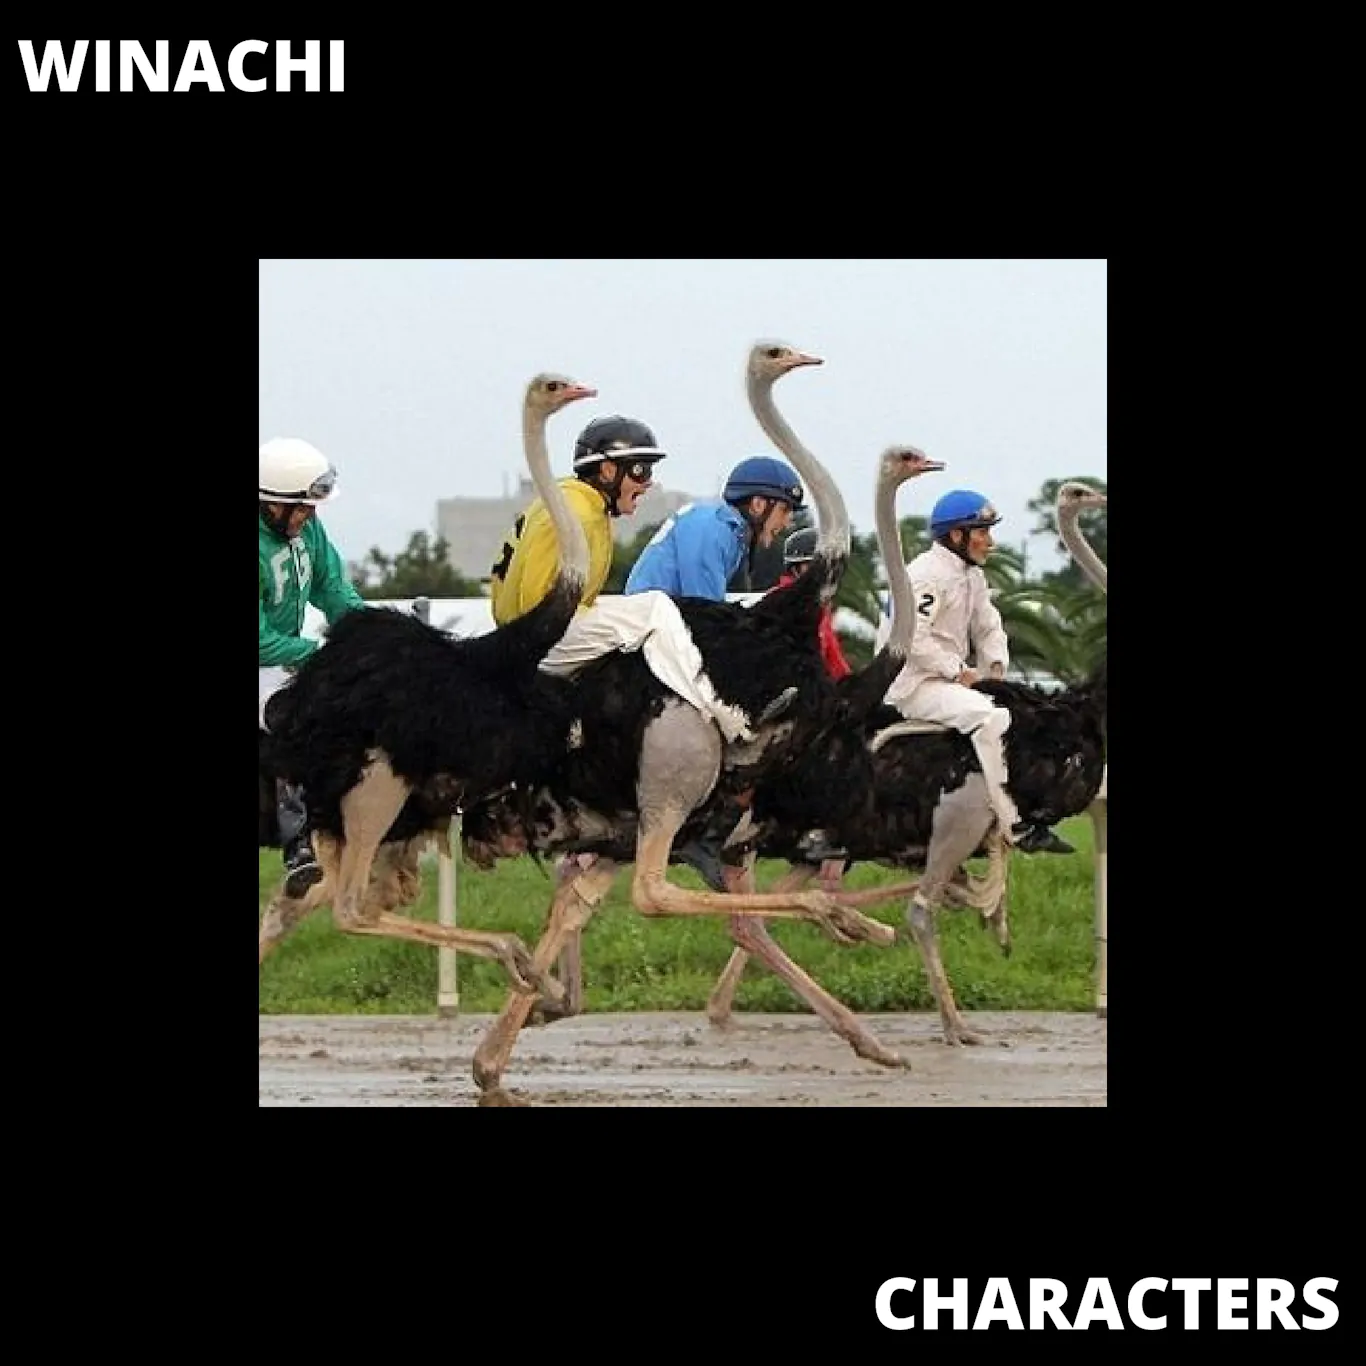 TRACK PREMIERE: Winachi – Characters